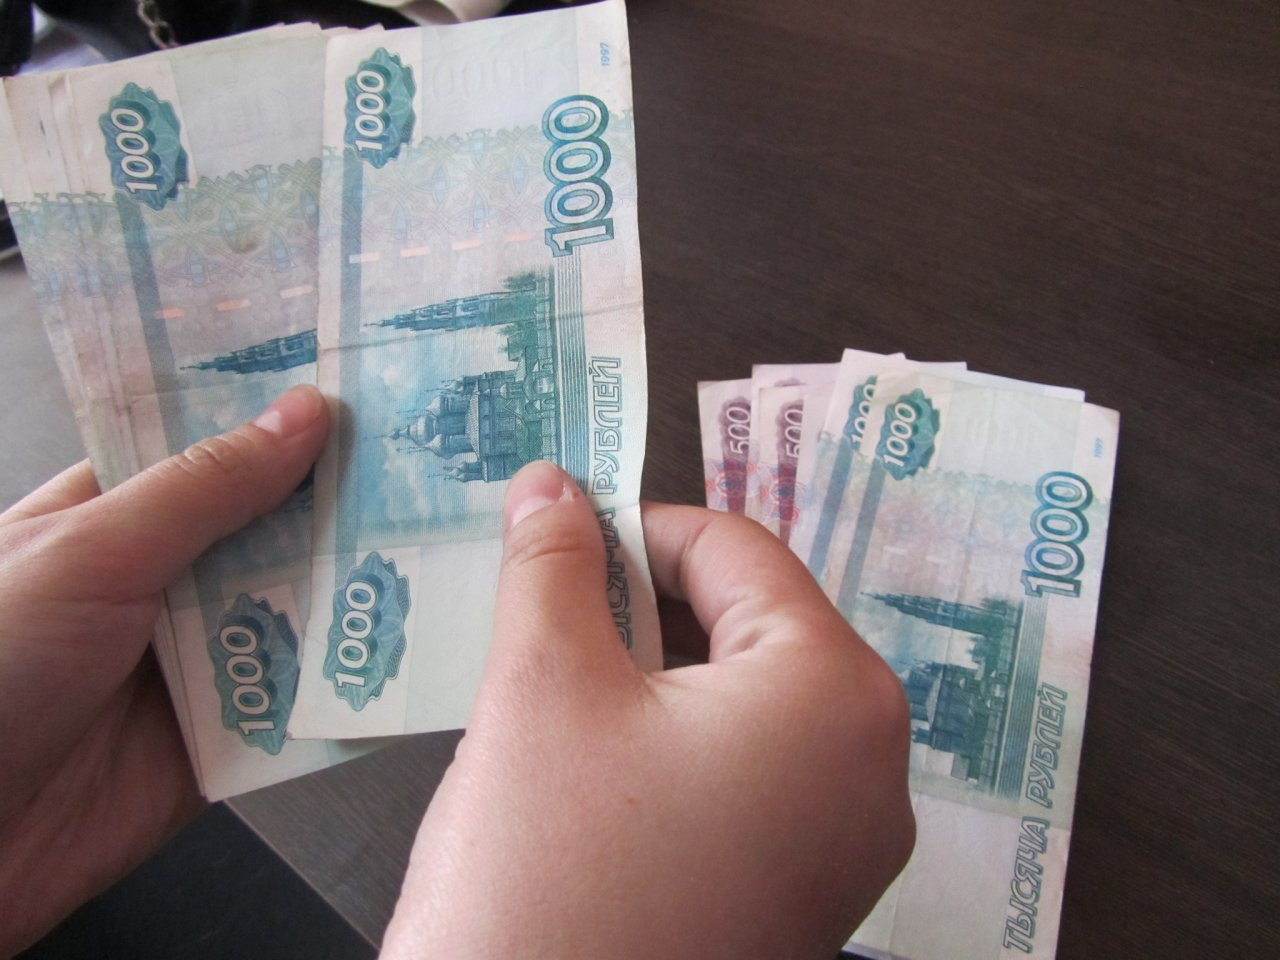 Кабмин поставил точку в вопросе о выплатах в 10 тысяч рублей: что решили?